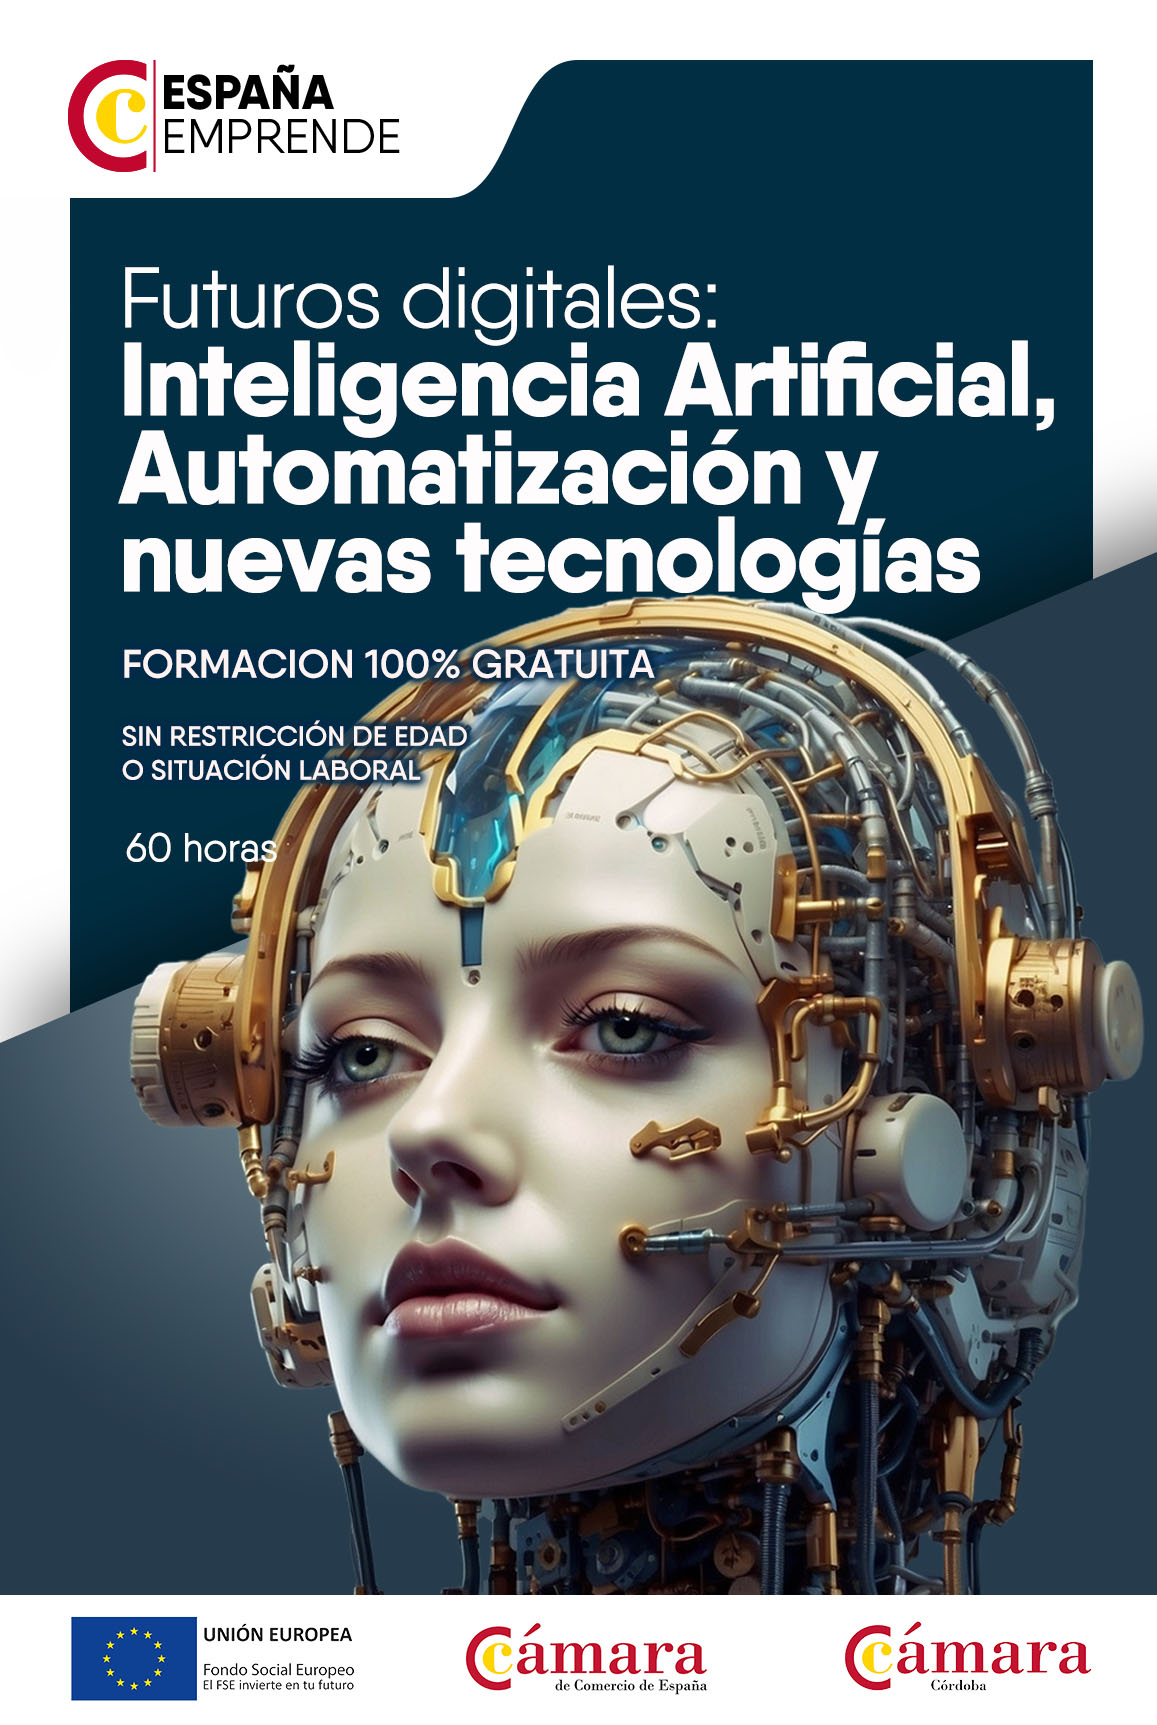 Futuros digitales: IA, automatización y nuevas tecnologías